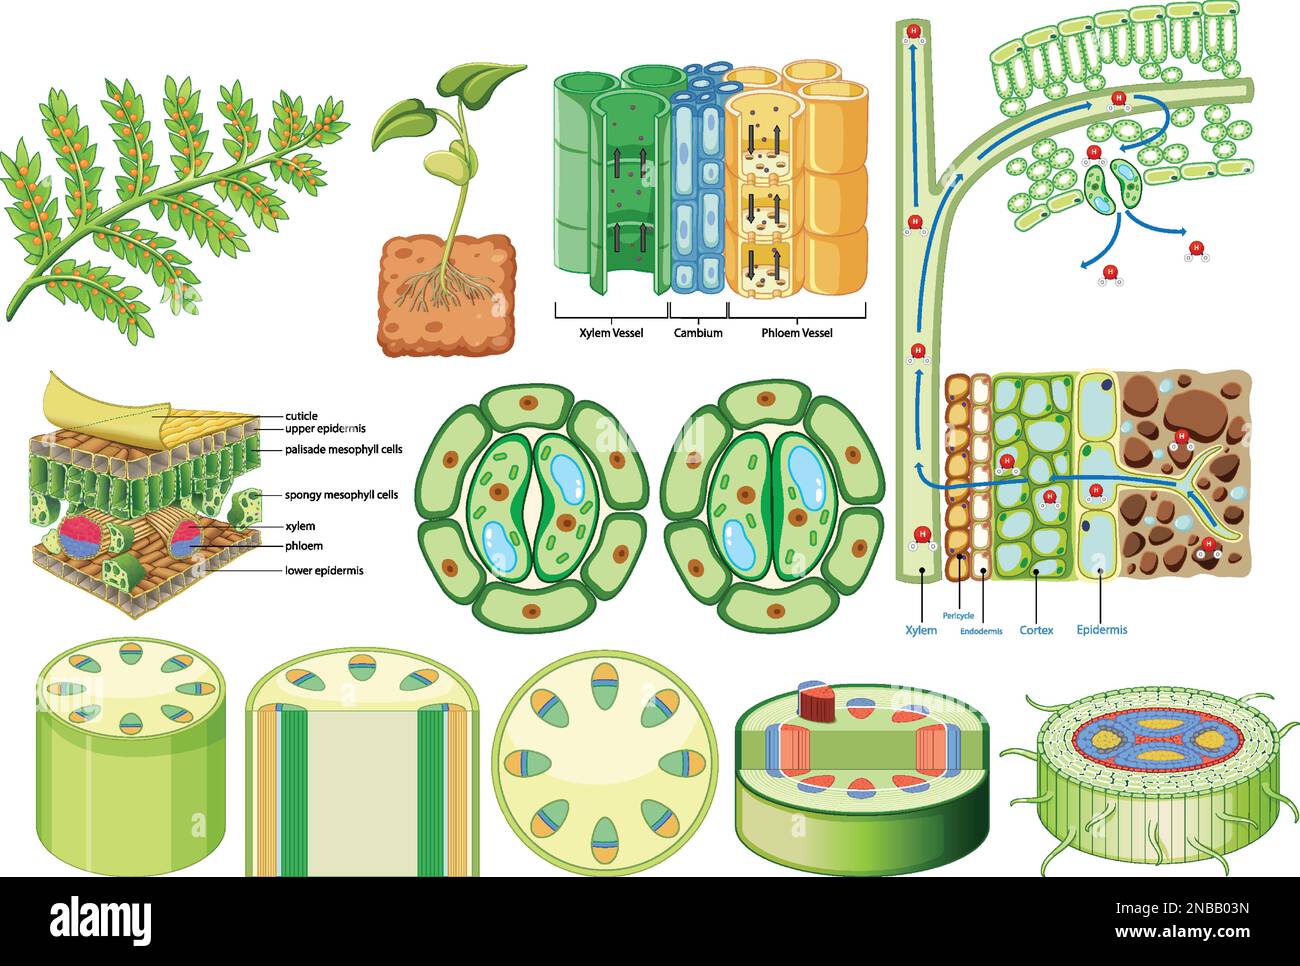 Illustration du tissu vasculaire de cohésion végétale (xylème et phloème) Illustration de Vecteur